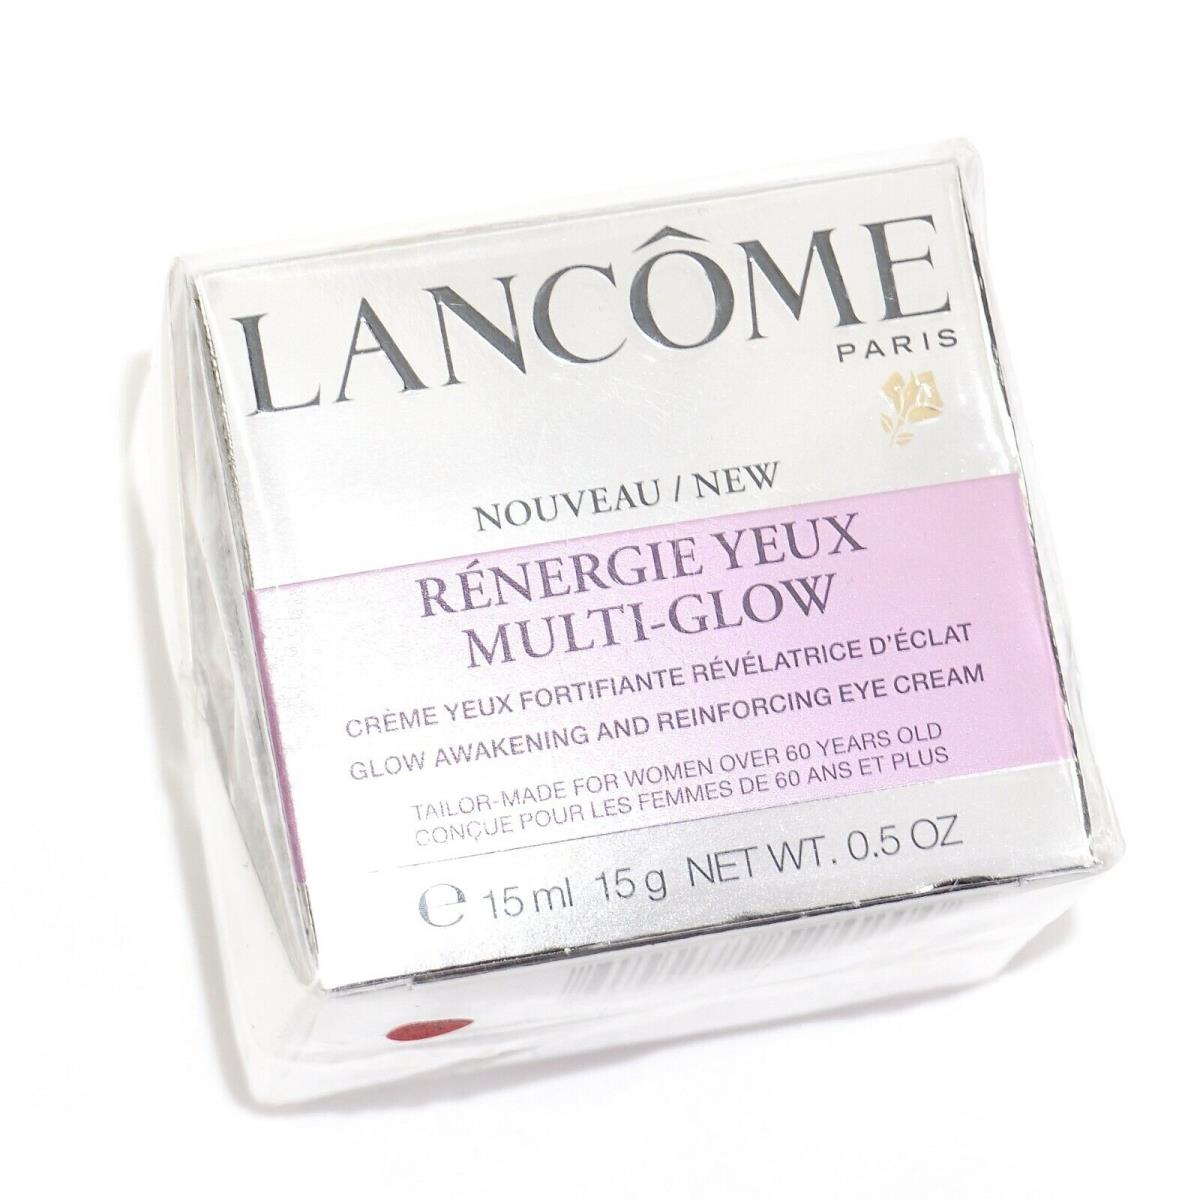 Lancome Renergie Yeux Multi-glow Awakening Eye Cream 0.5oz. Rare